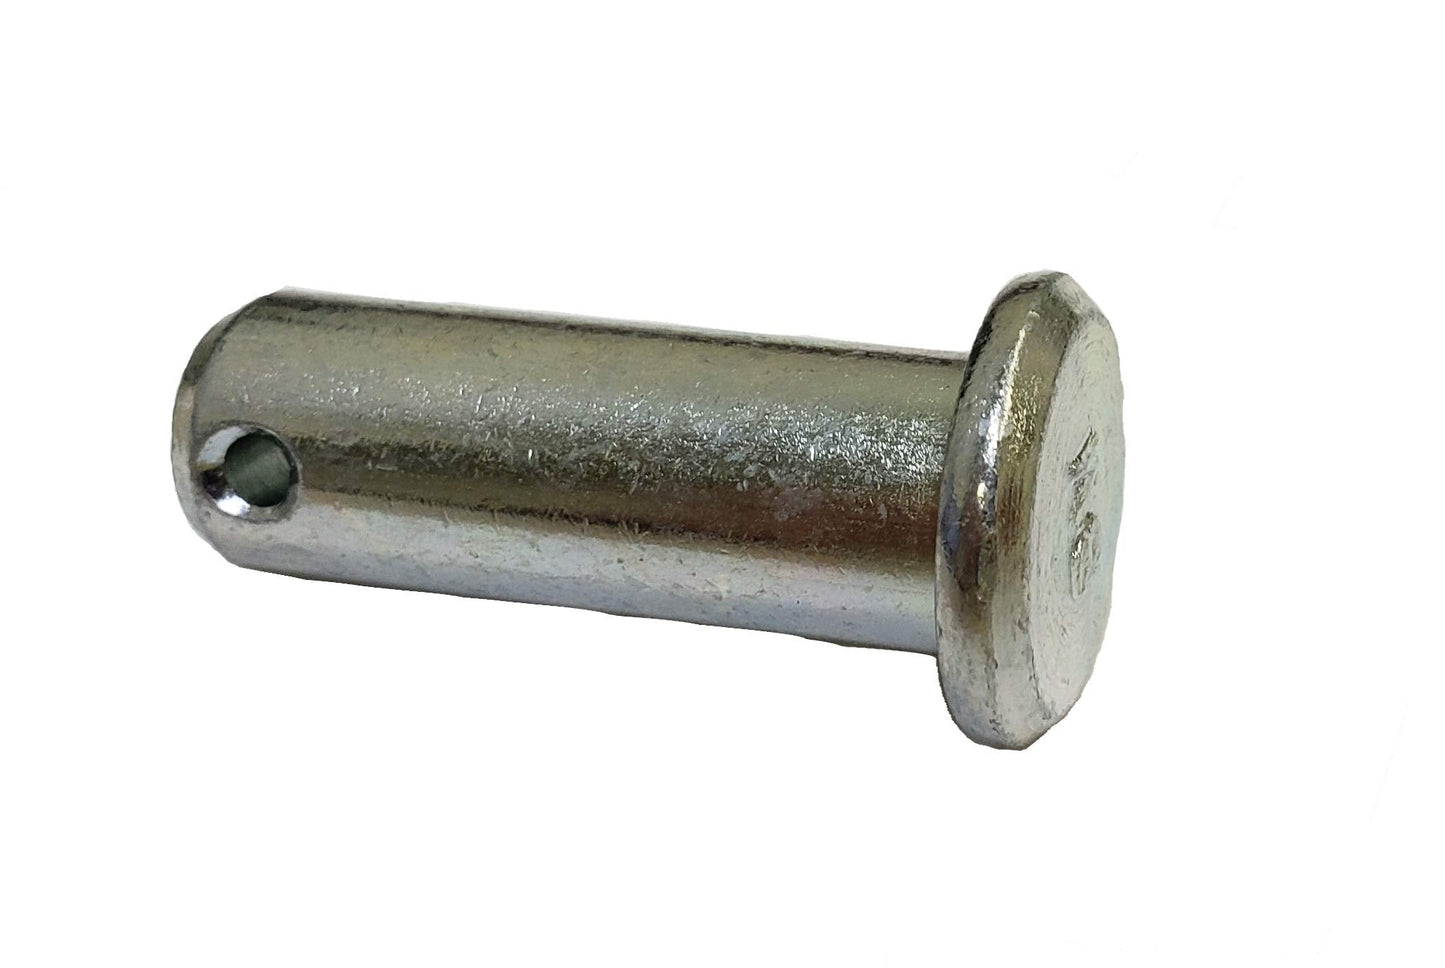 John Deere Original Equipment Pin Fastener - 45M7058